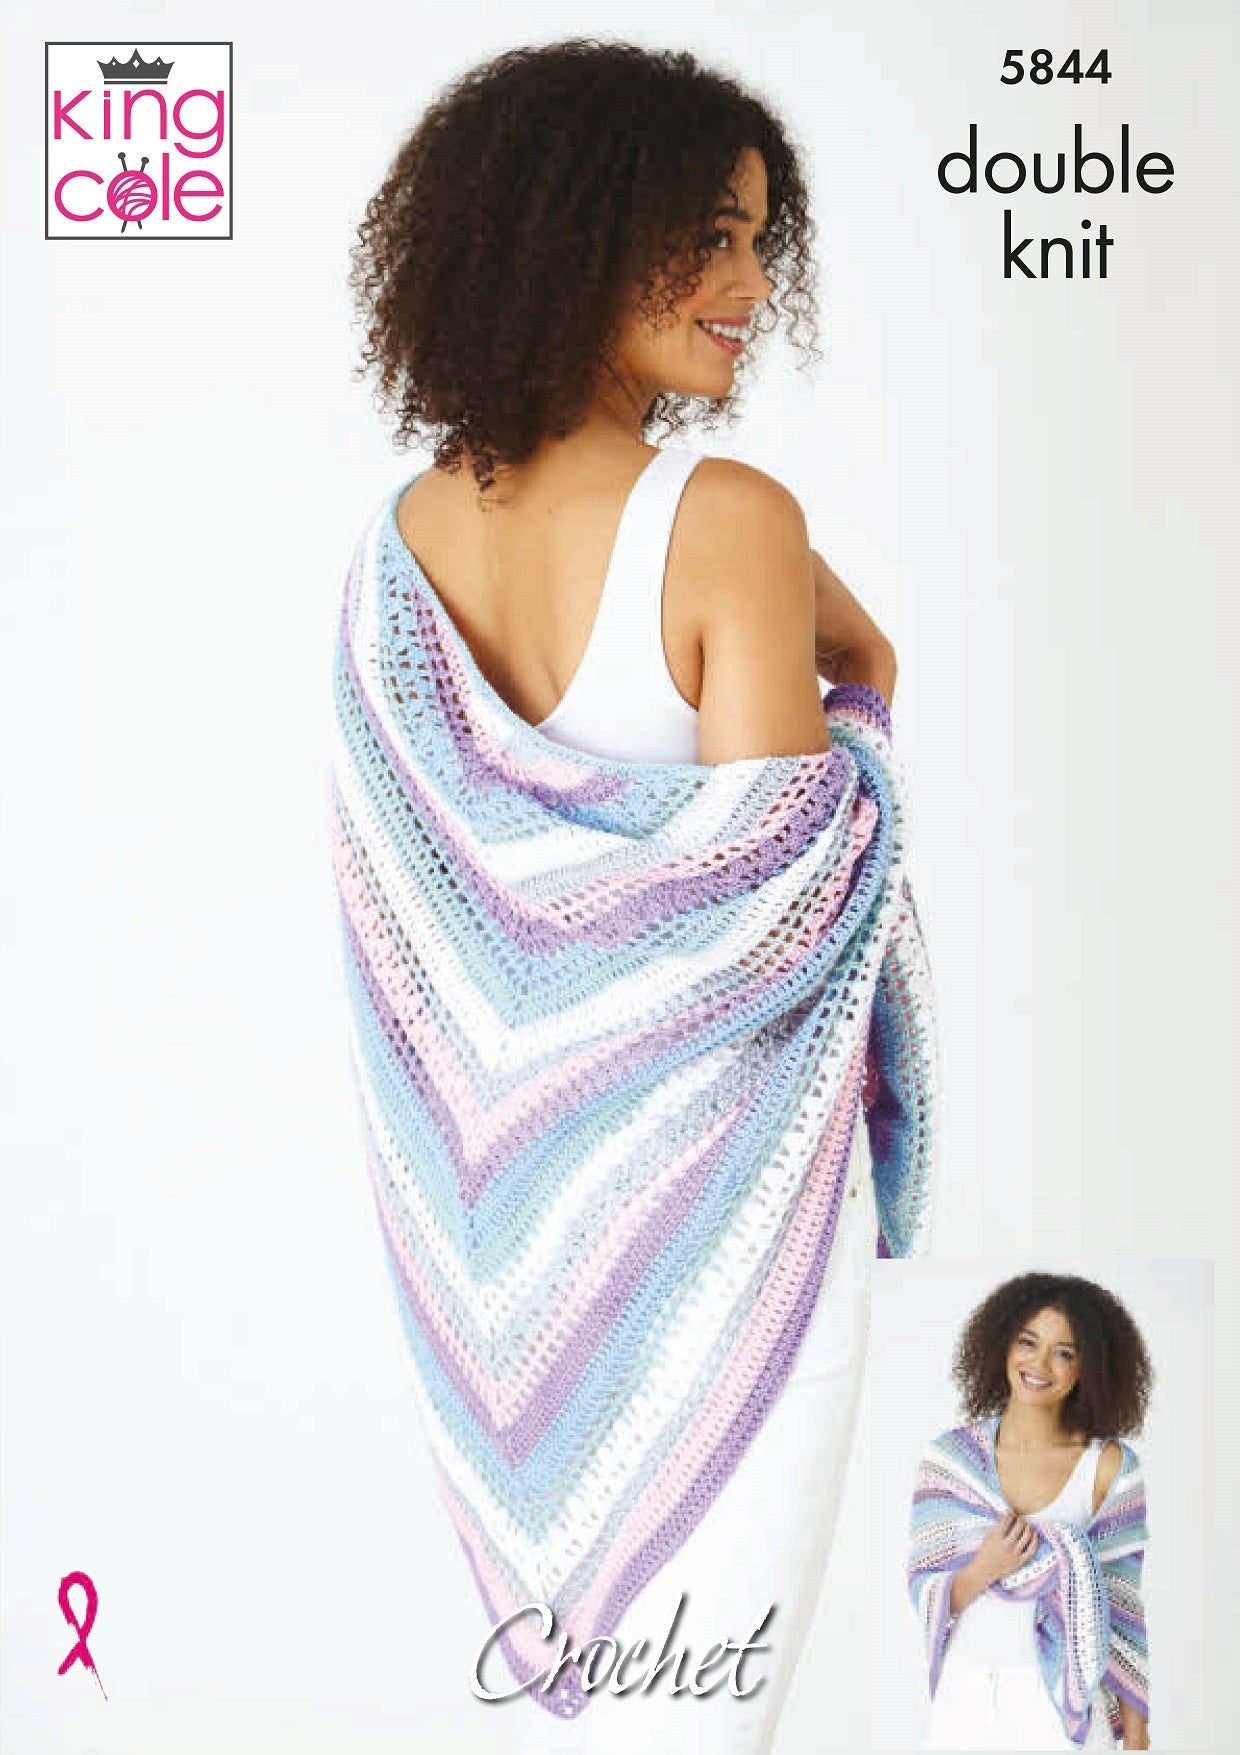 King Cole Pattern 5844 (Crochet)